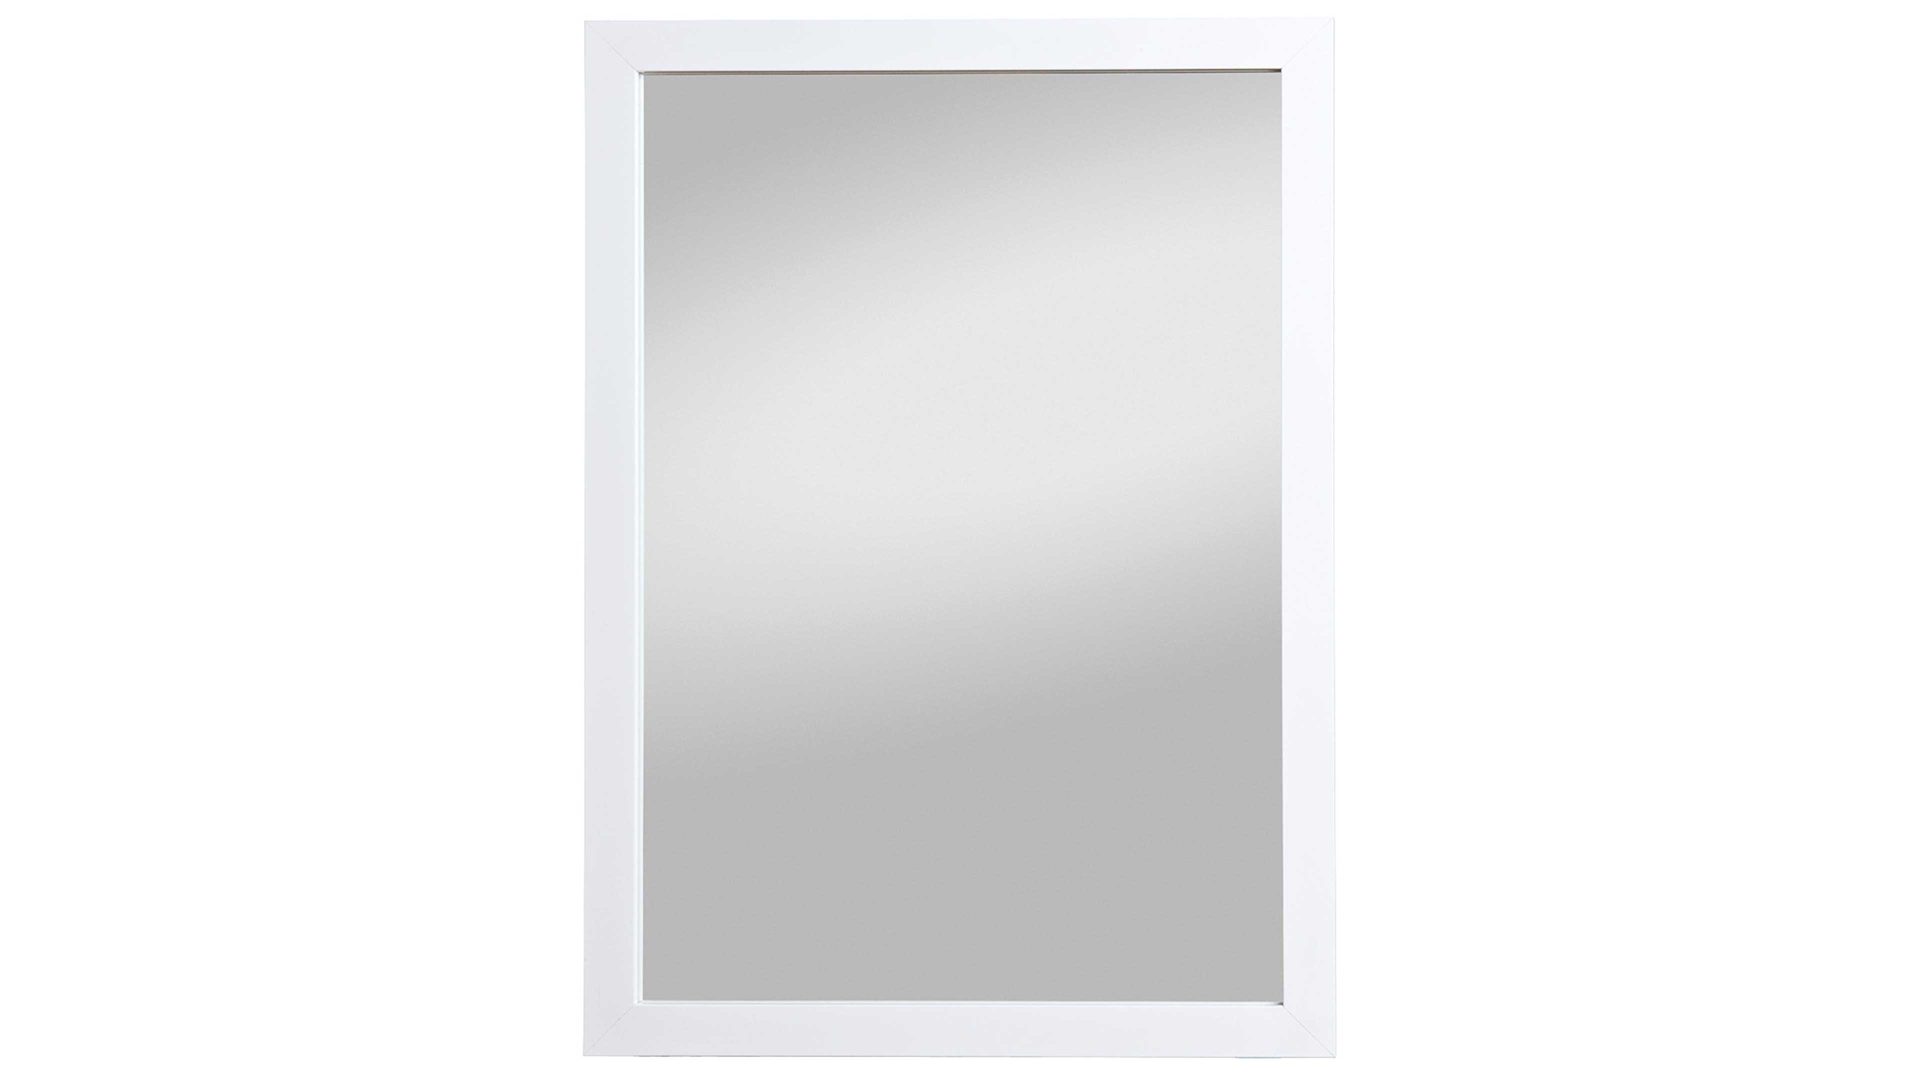 Wandspiegel Spiegelprofi aus Spiegel in Weiß Rahmenspiegel Kathi glänzender weißer Rahmen – ca. 48 x 68 cm